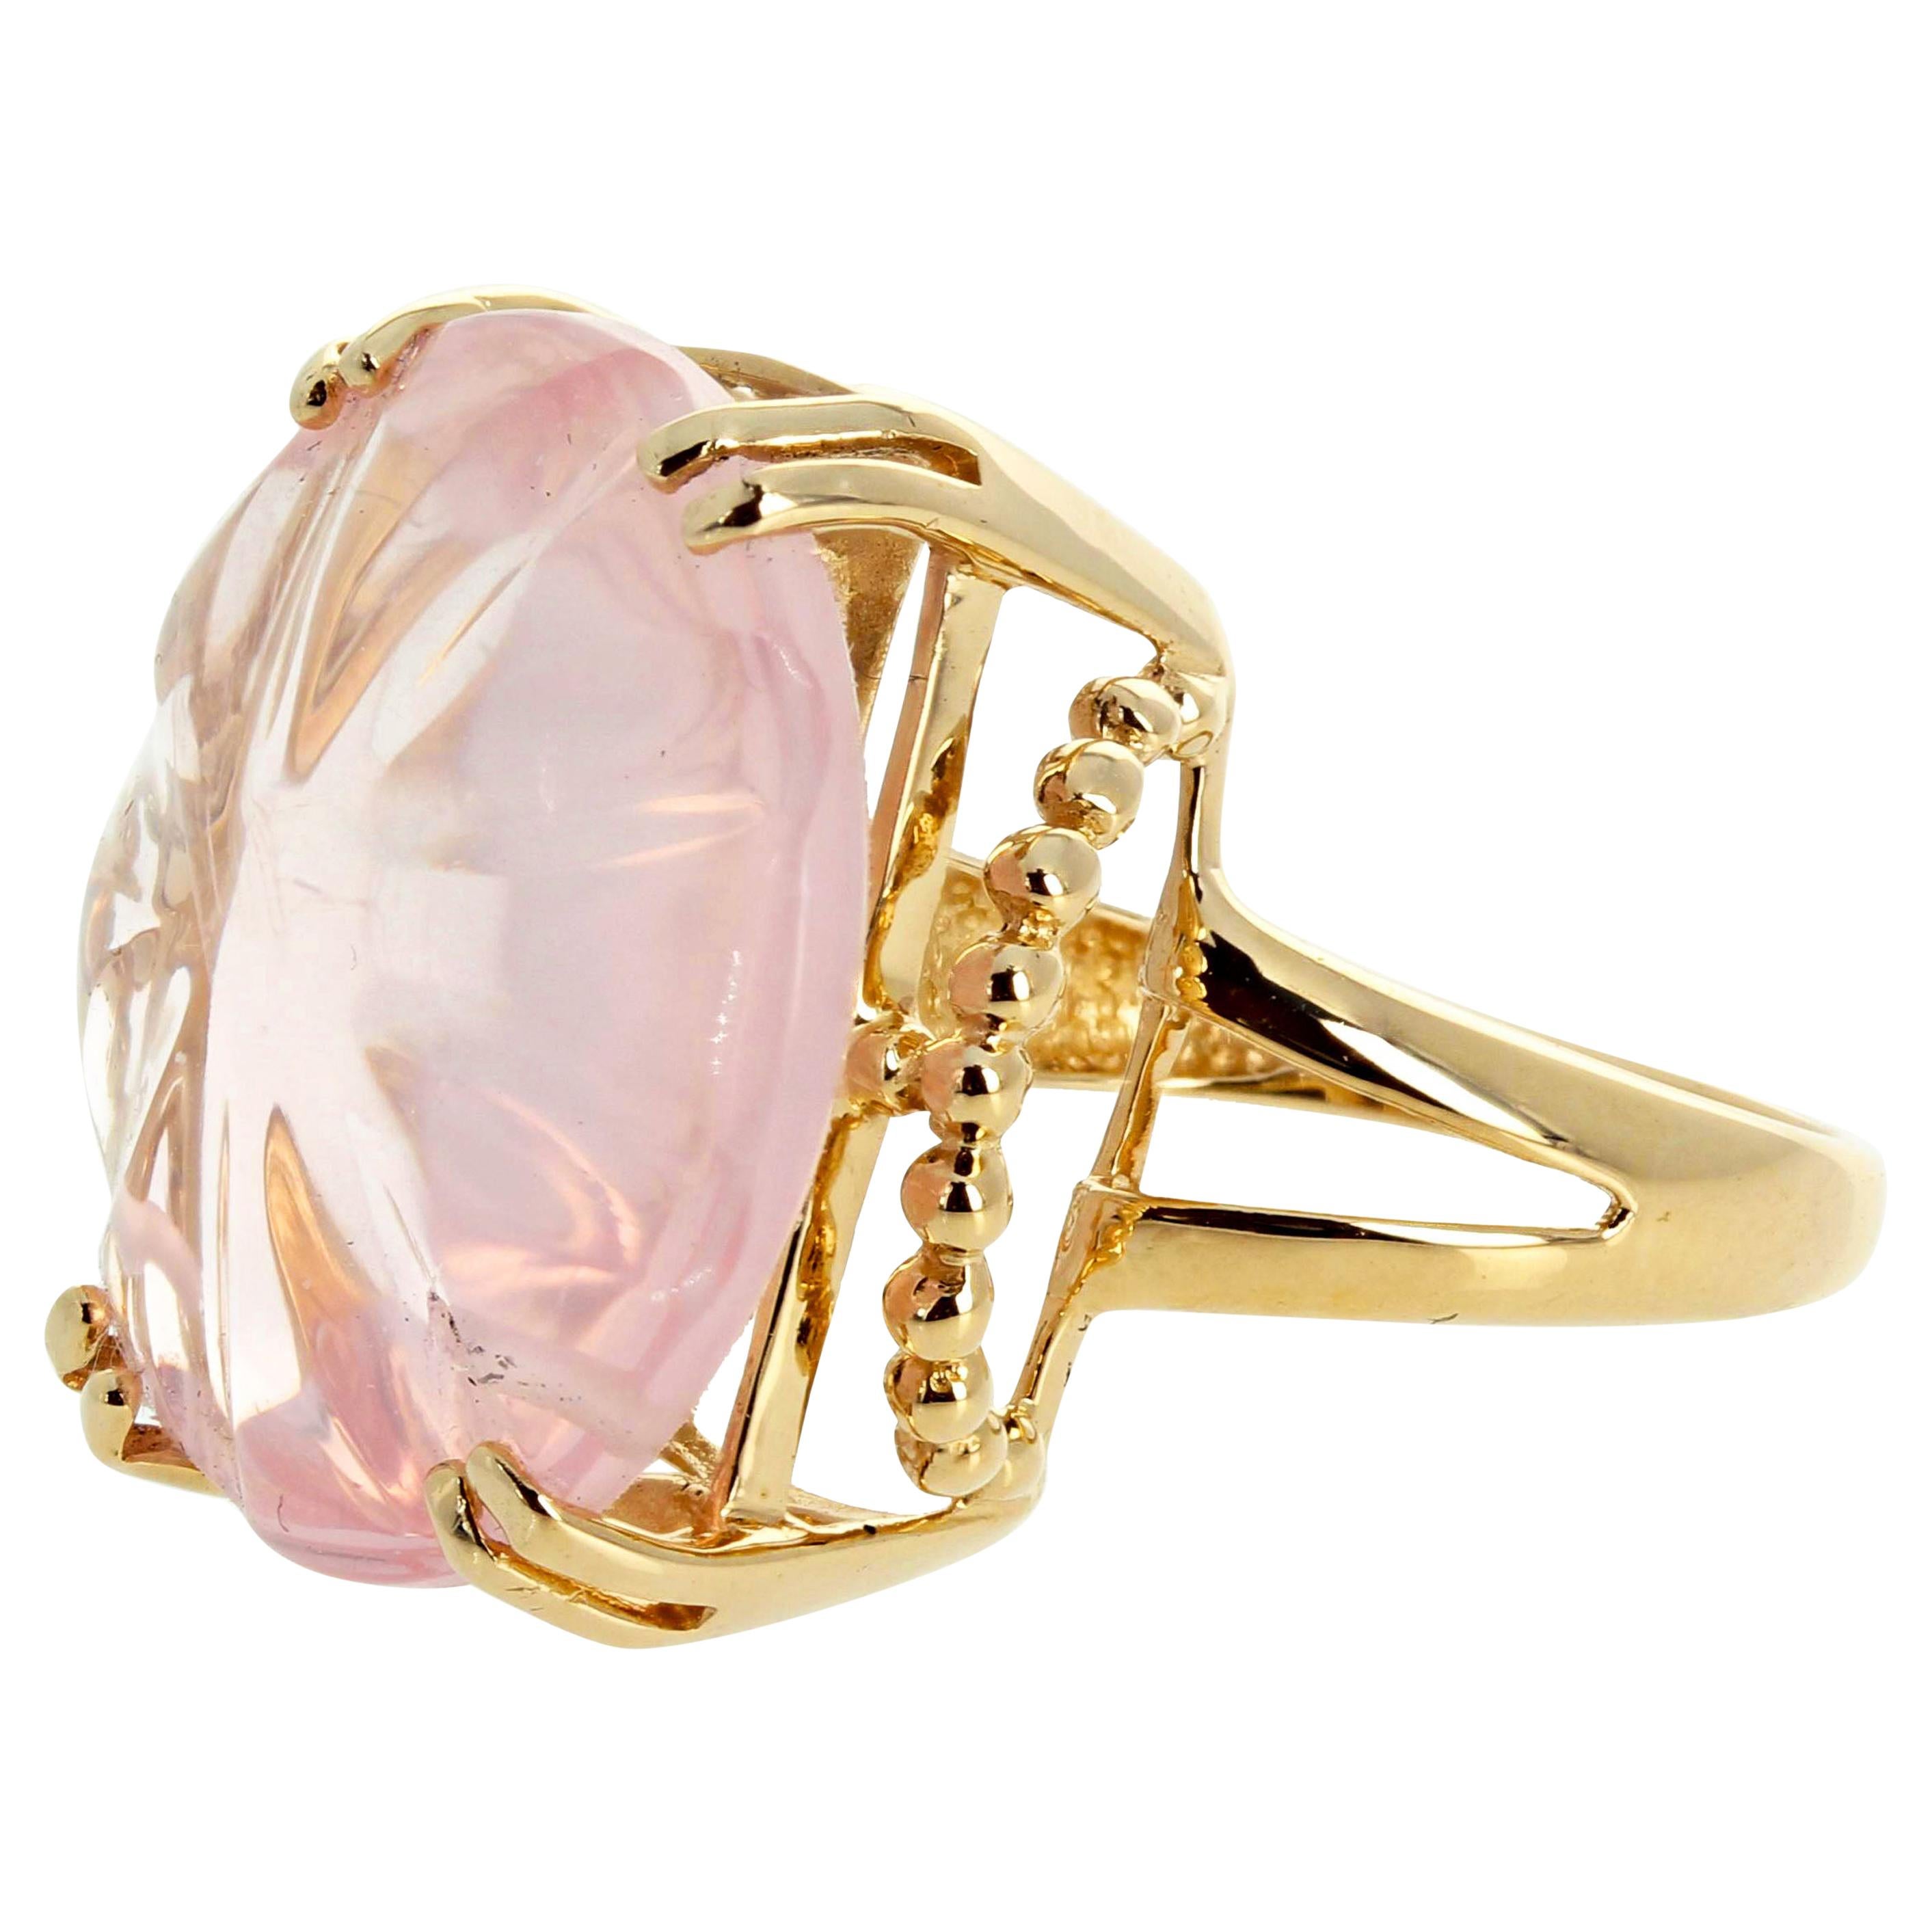 Gemjunky "Old Hollywood" Stunning Carved 14Cts Blush/Rose Color Quartz Gold Ring